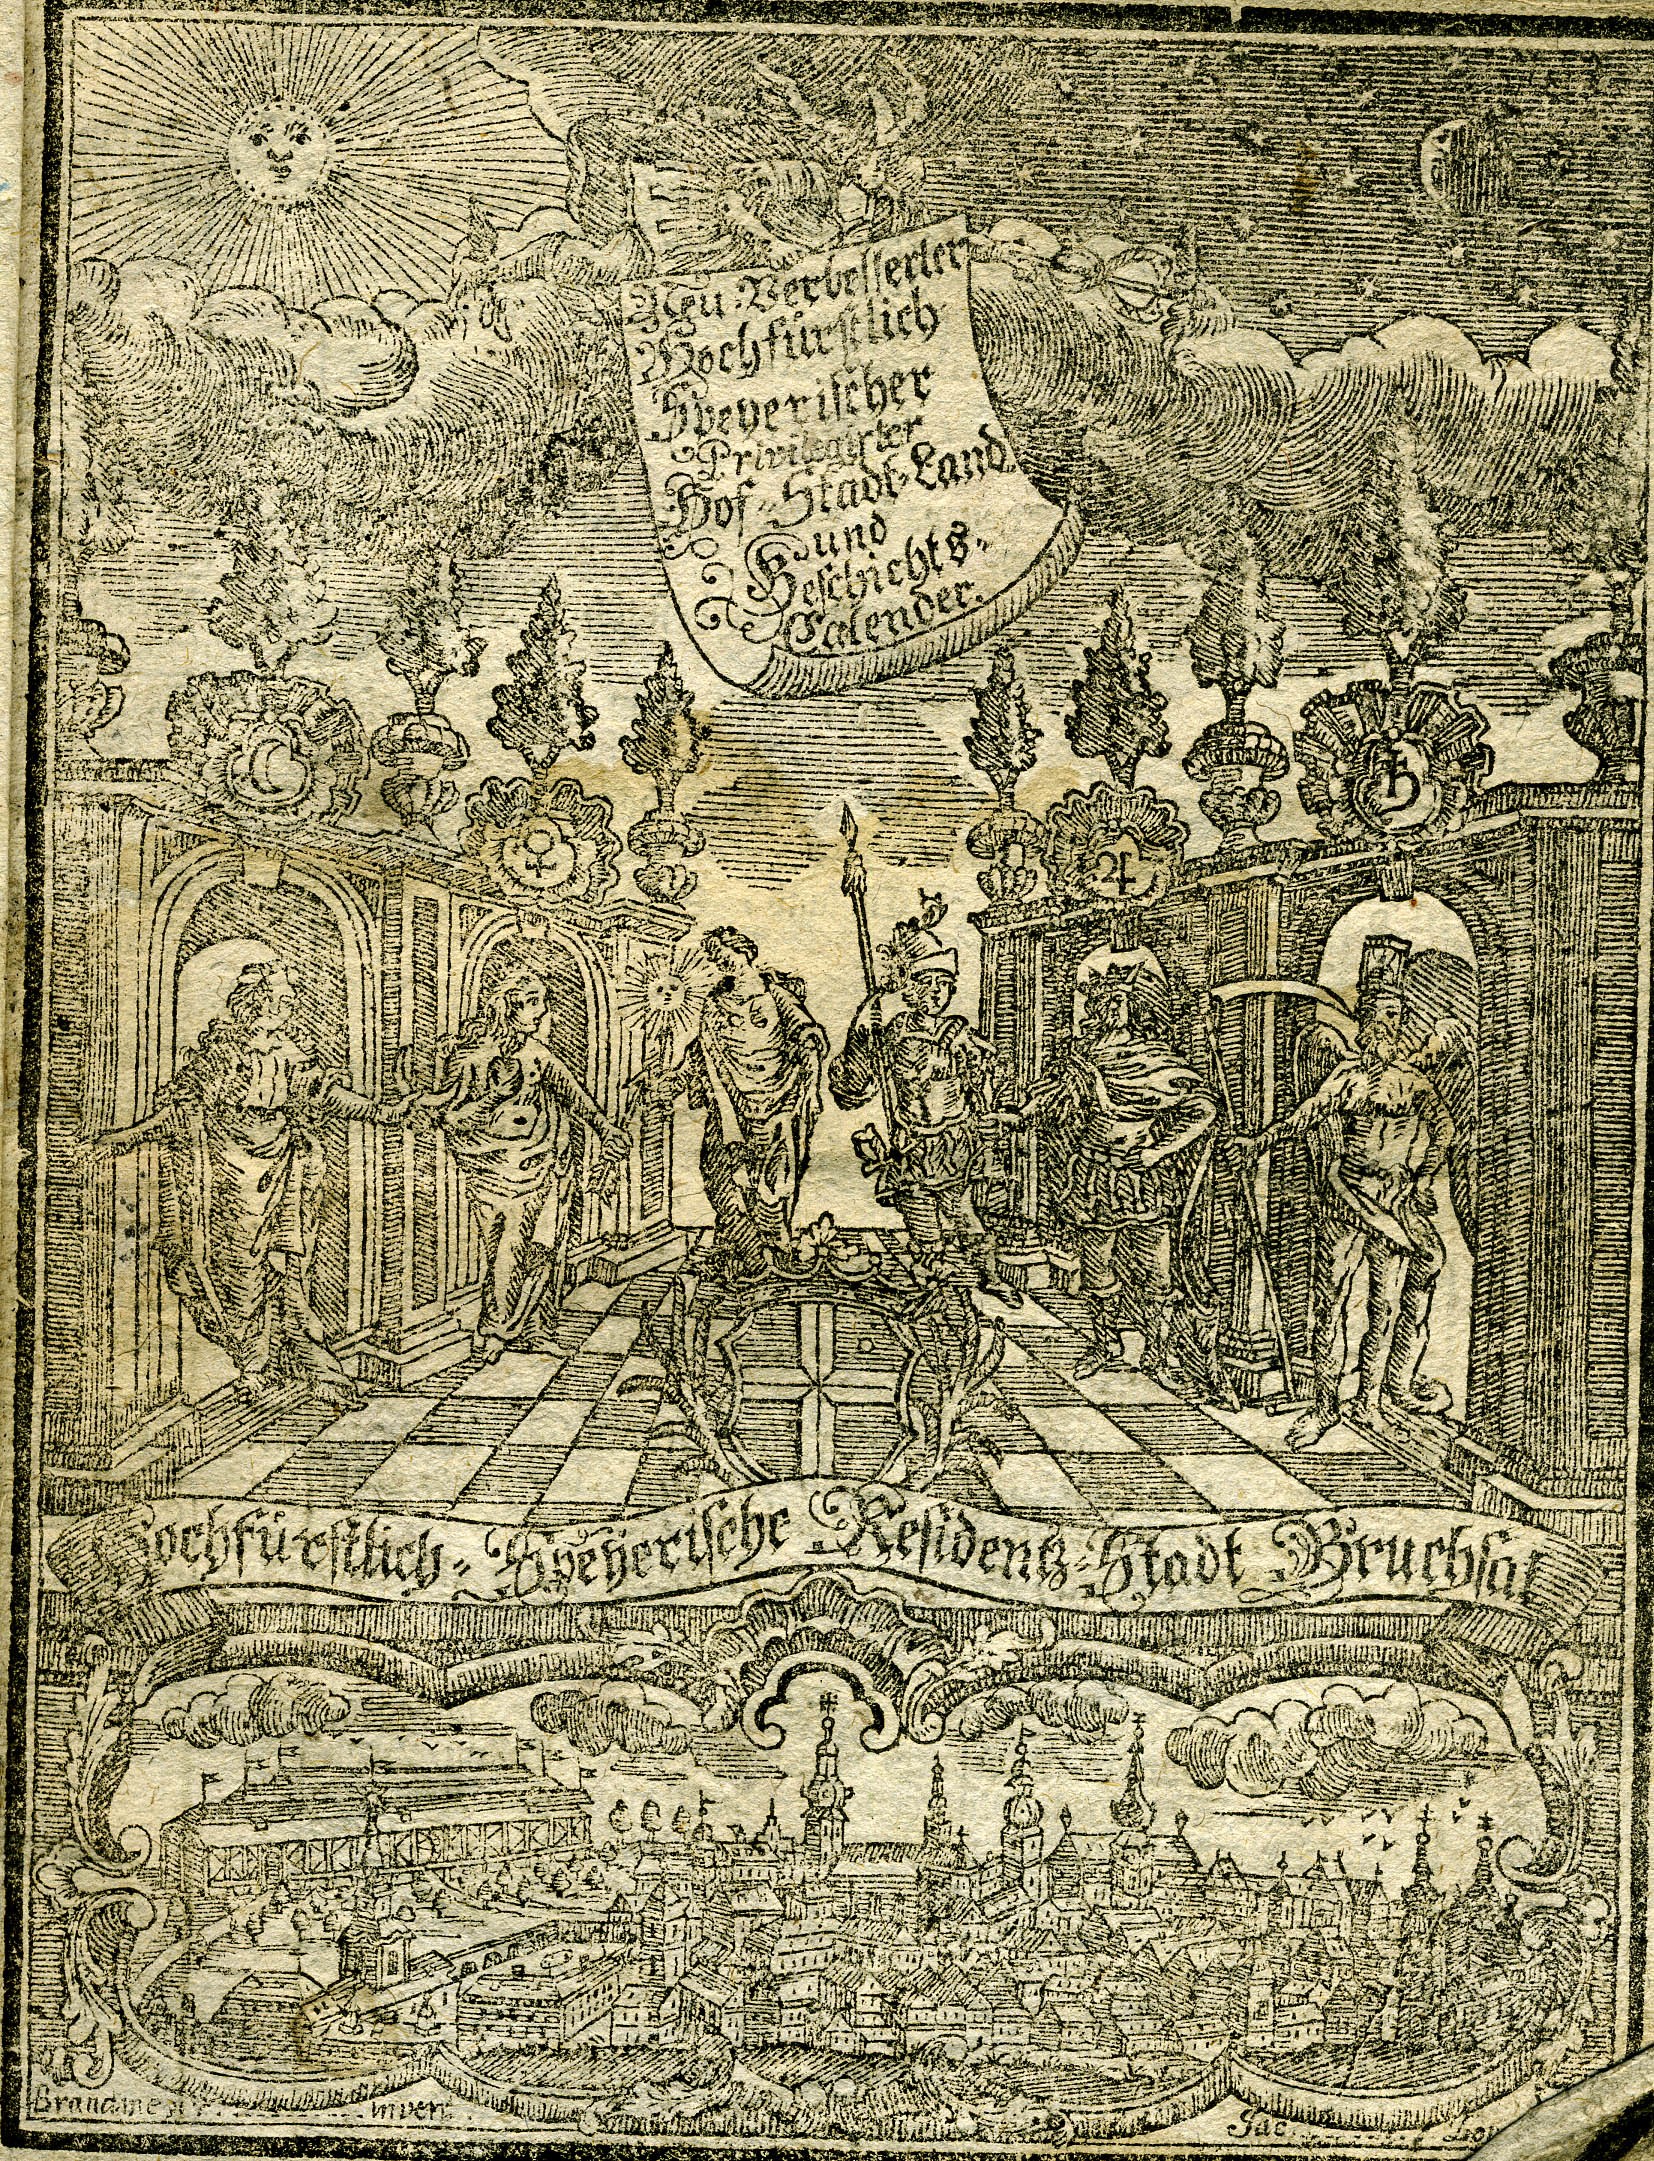 Hochfürstlicher Speyerischer- Landkalender für das Jahr 1794 (Historisches Museum der Pfalz, Speyer CC BY)